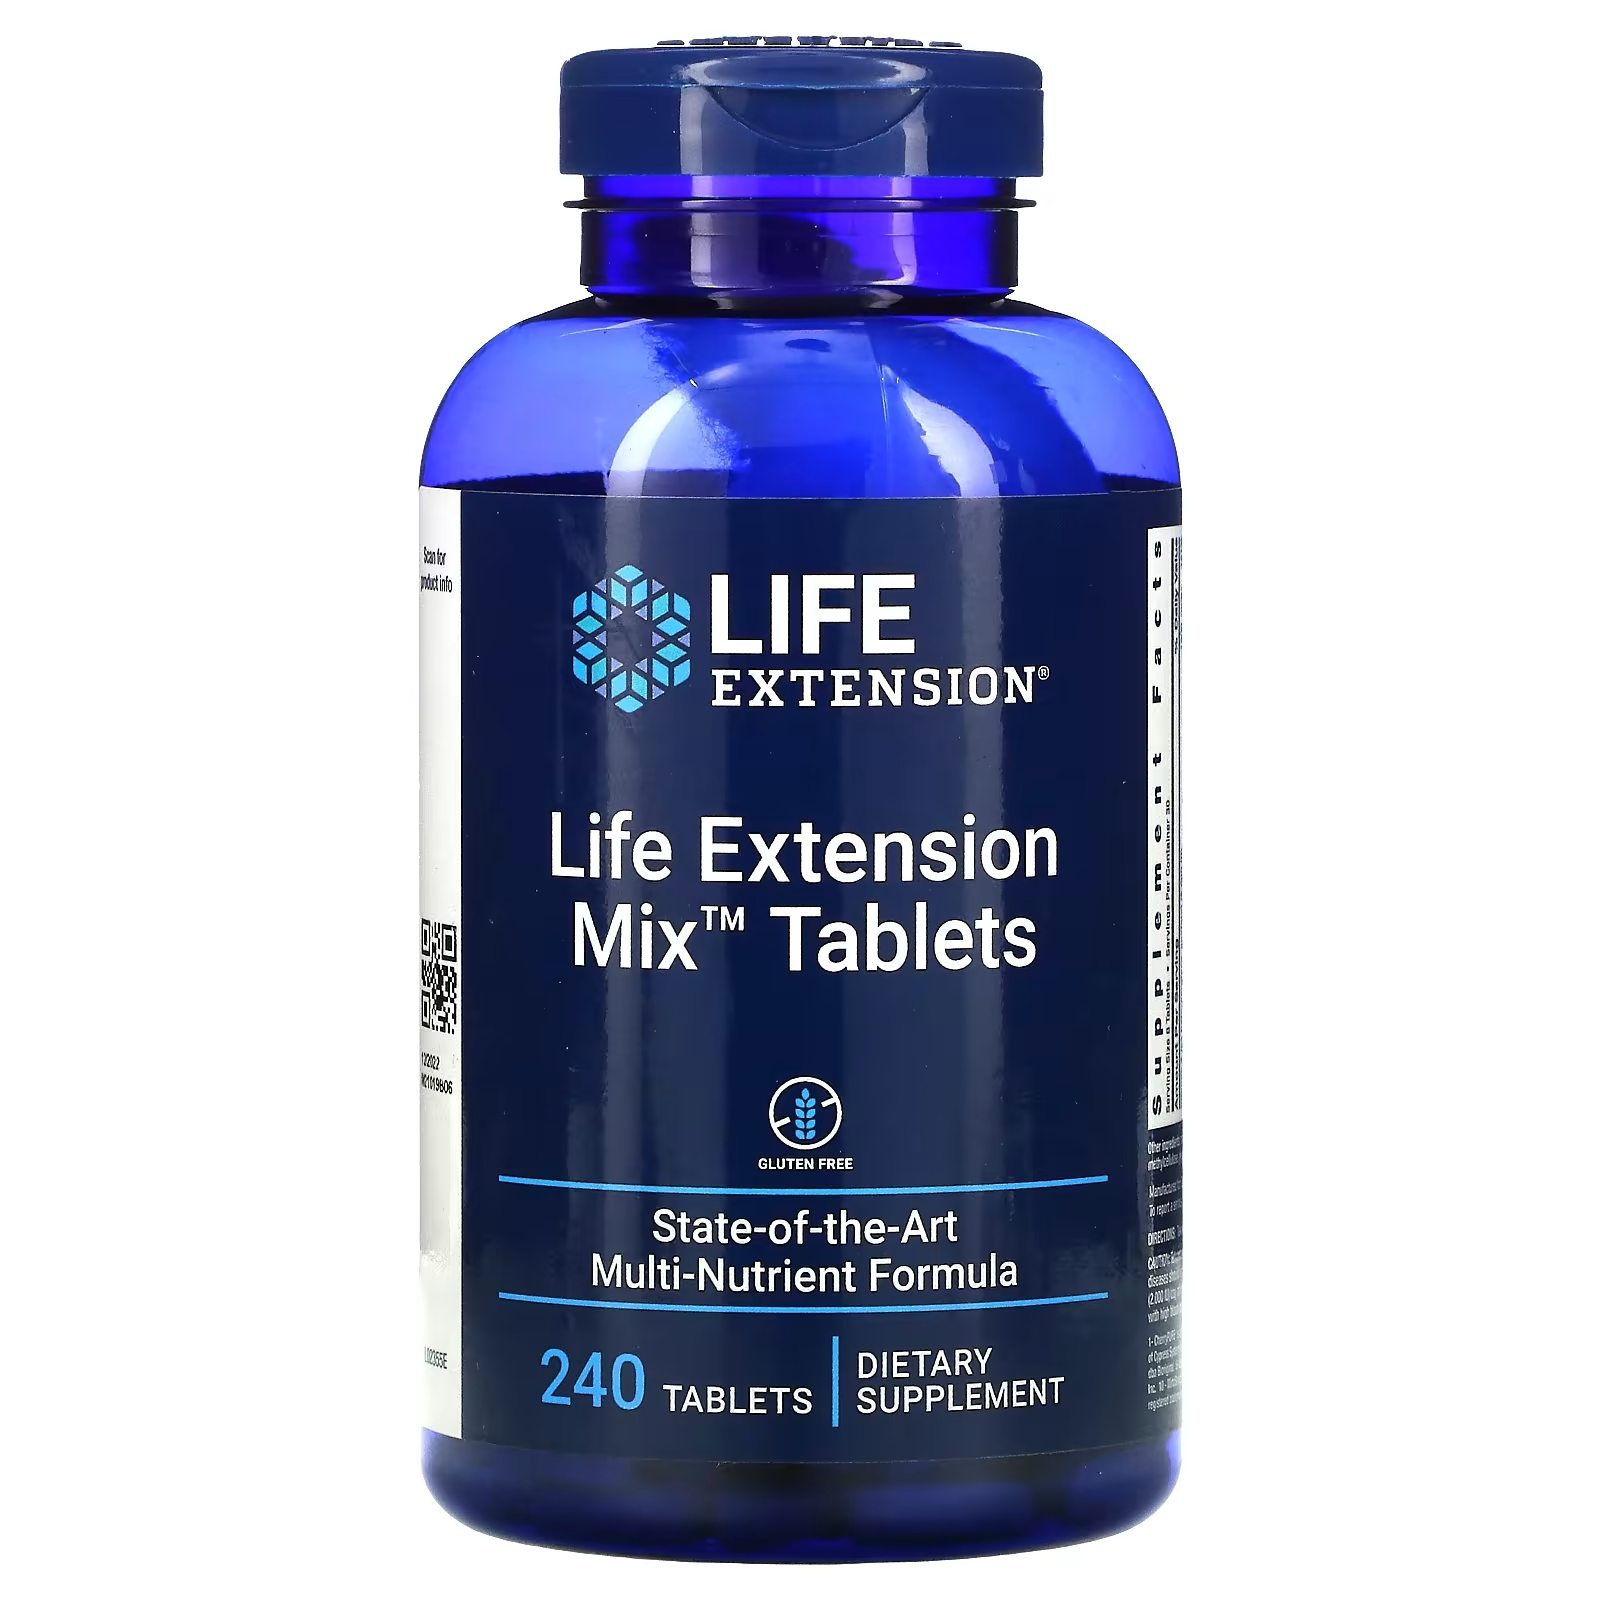 life extension life extension mix детская добавка с натуральным ягодным вкусом 120 жевательных таблеток Пищевая Добавка Life Extension Mix Tablets, 240 таблеток